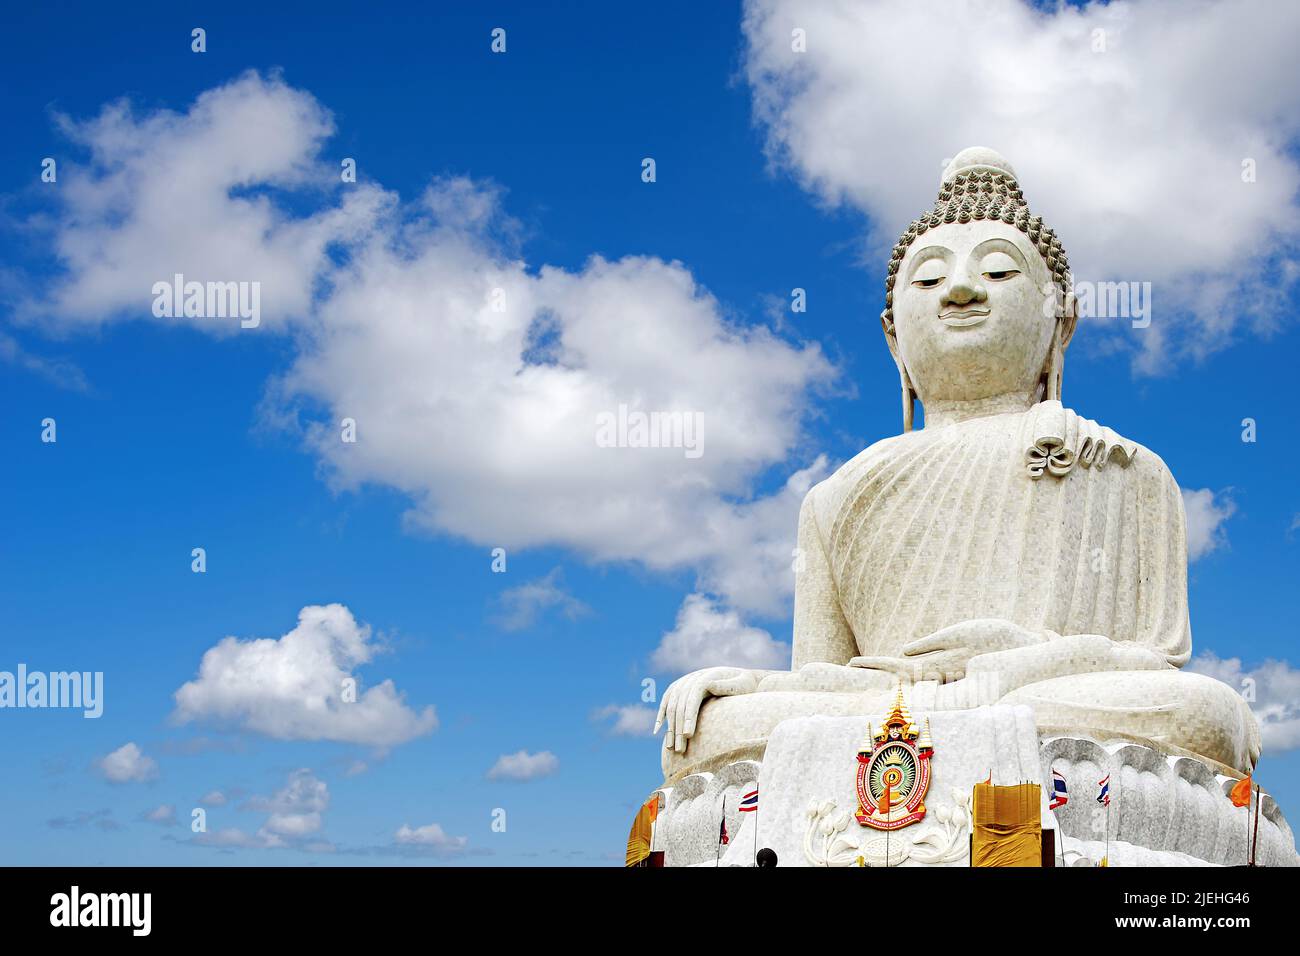 Cumulus Wolken vor blauen Himmel, Buddha, Asien, Thailand, Buddhismus, Religion, Phuket, weisser Buddha, big Buddha, Stock Photo